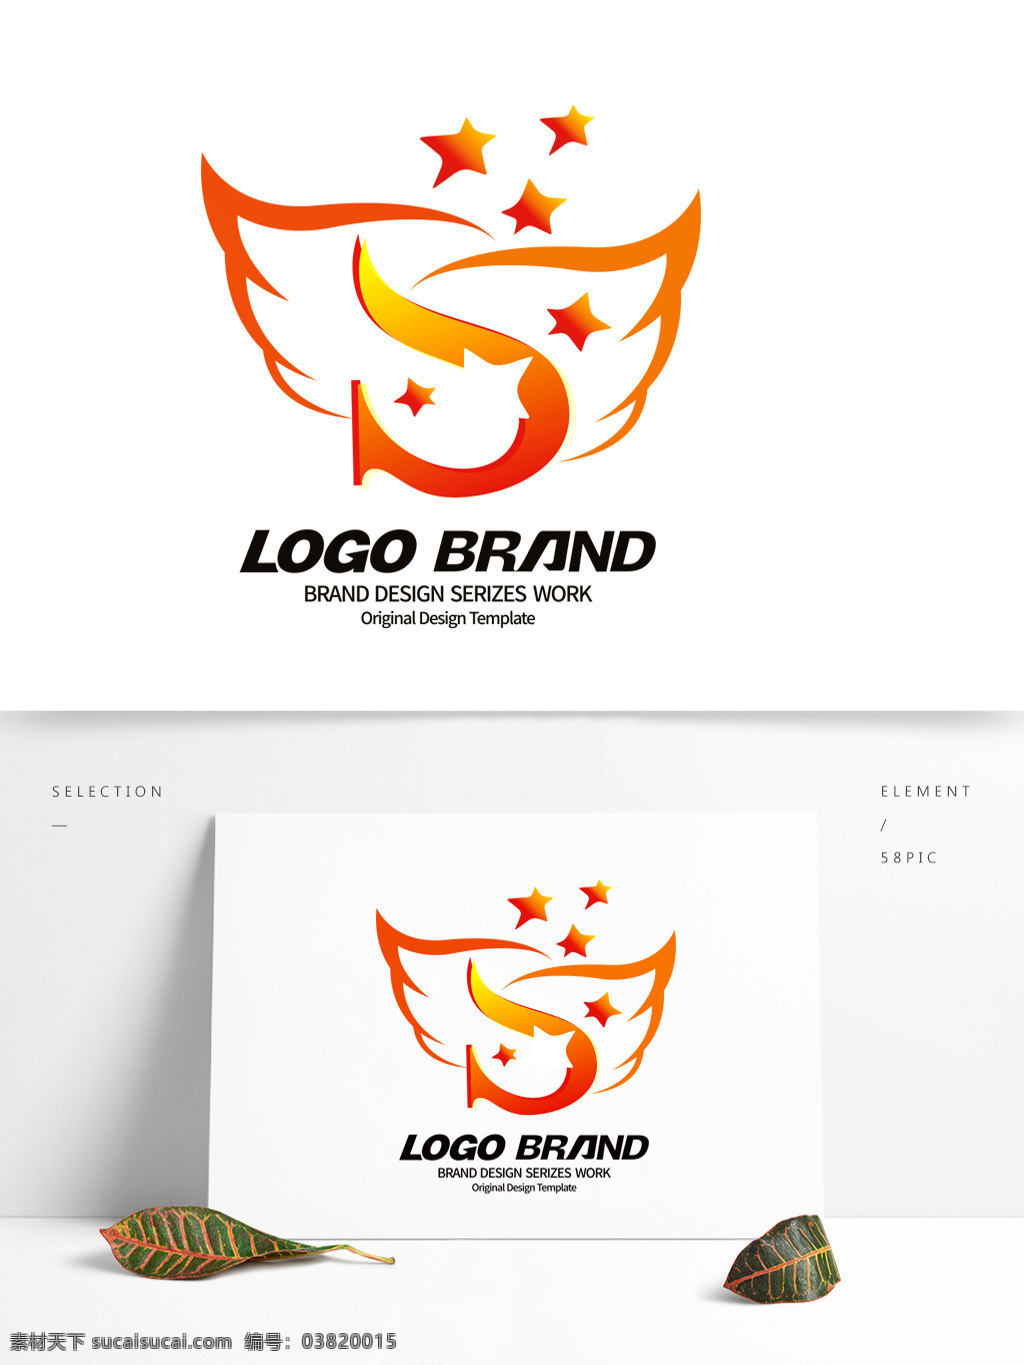 创意 红 黄 翅膀 s 字母 公司 logo 标志设计 中国 社区 j 标志 星形 公司标志设计 企业 会徽标志设计 企业标志设计